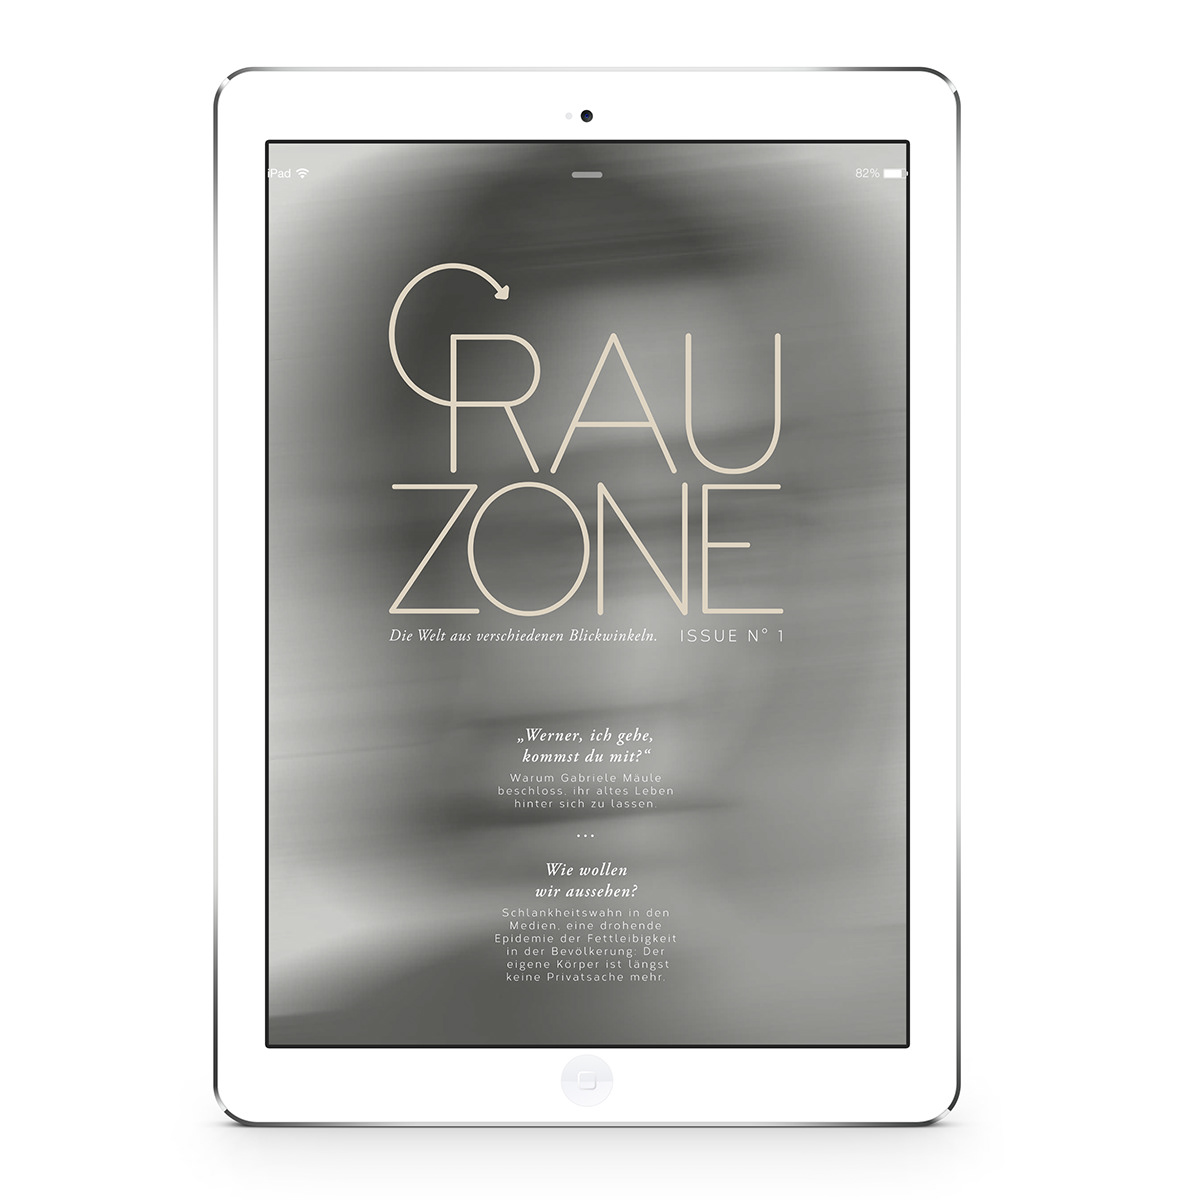 Grauzone grau student editorial iPad Emag konstanz people Menschen grey zone